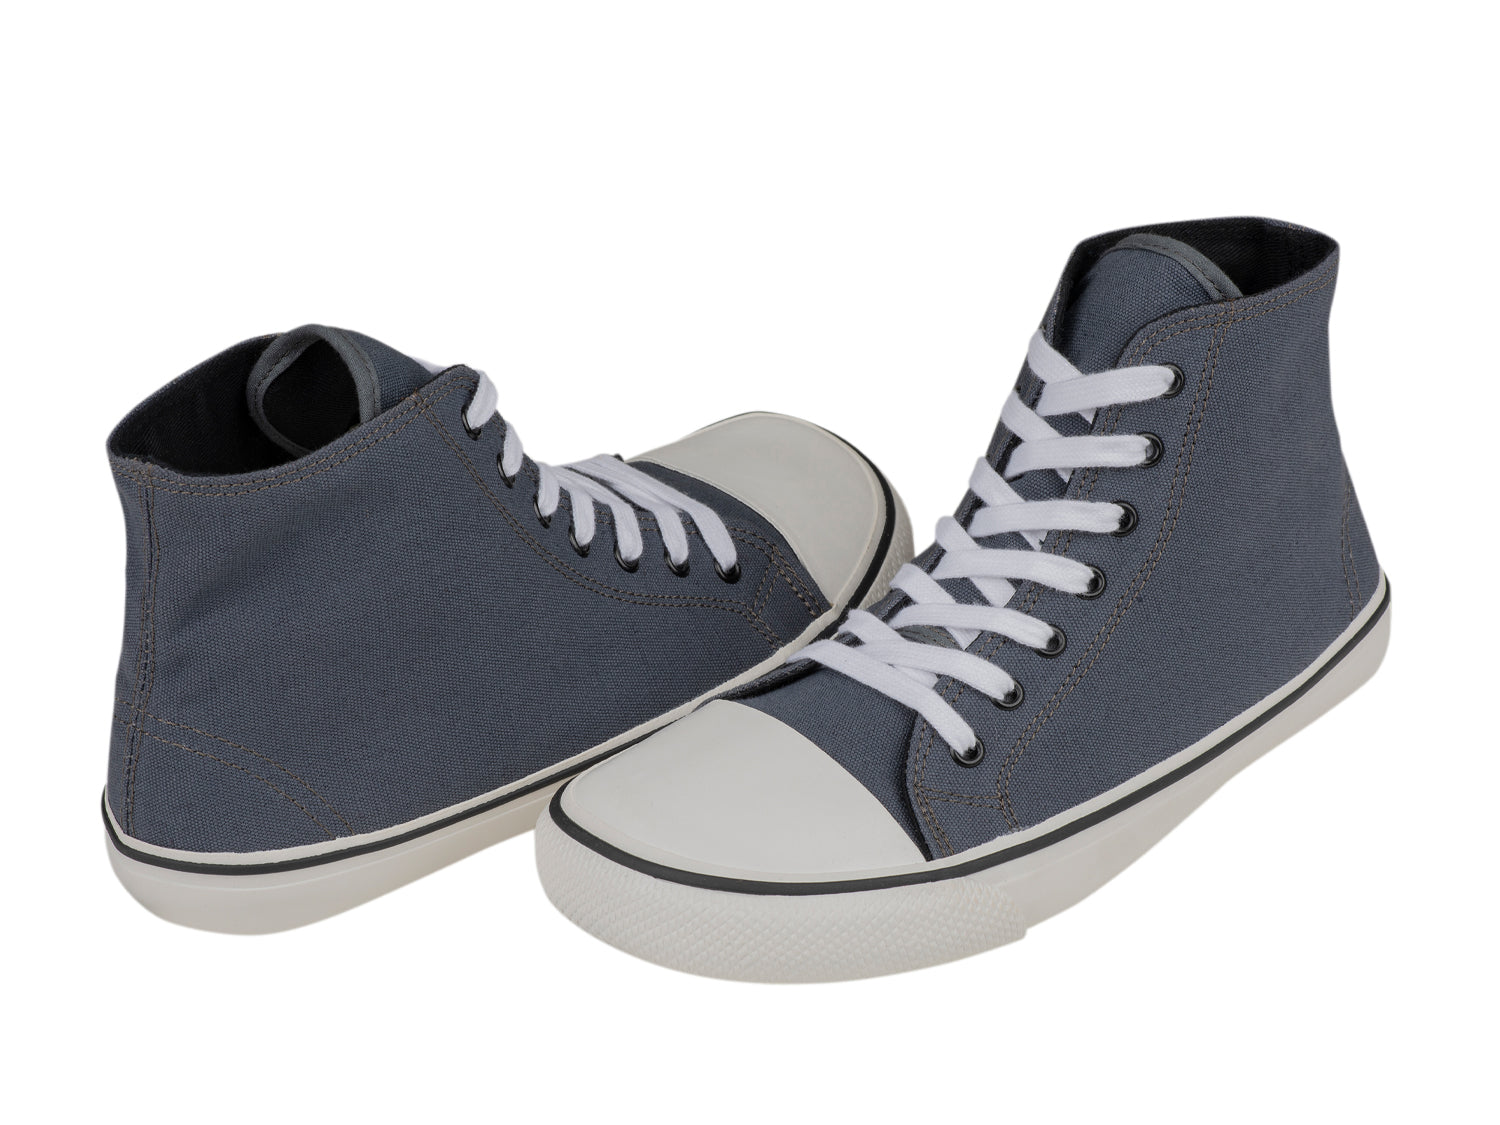 Bohempia Orik 2.0 barfods converse sneakers til kvinder og mænd i farven grey-white, par